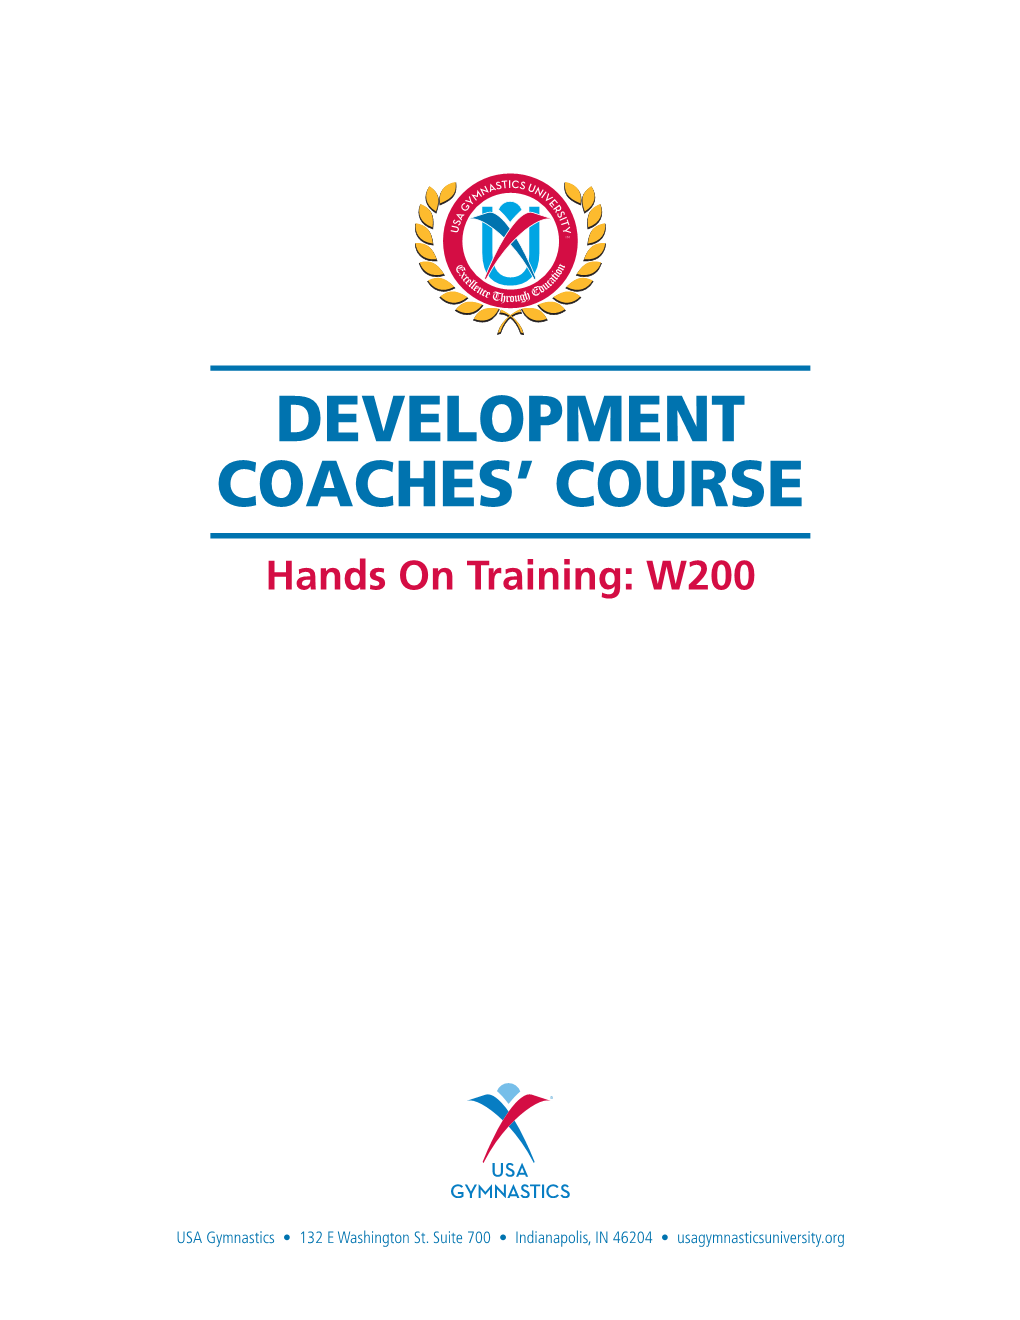 Development Coaches' Course